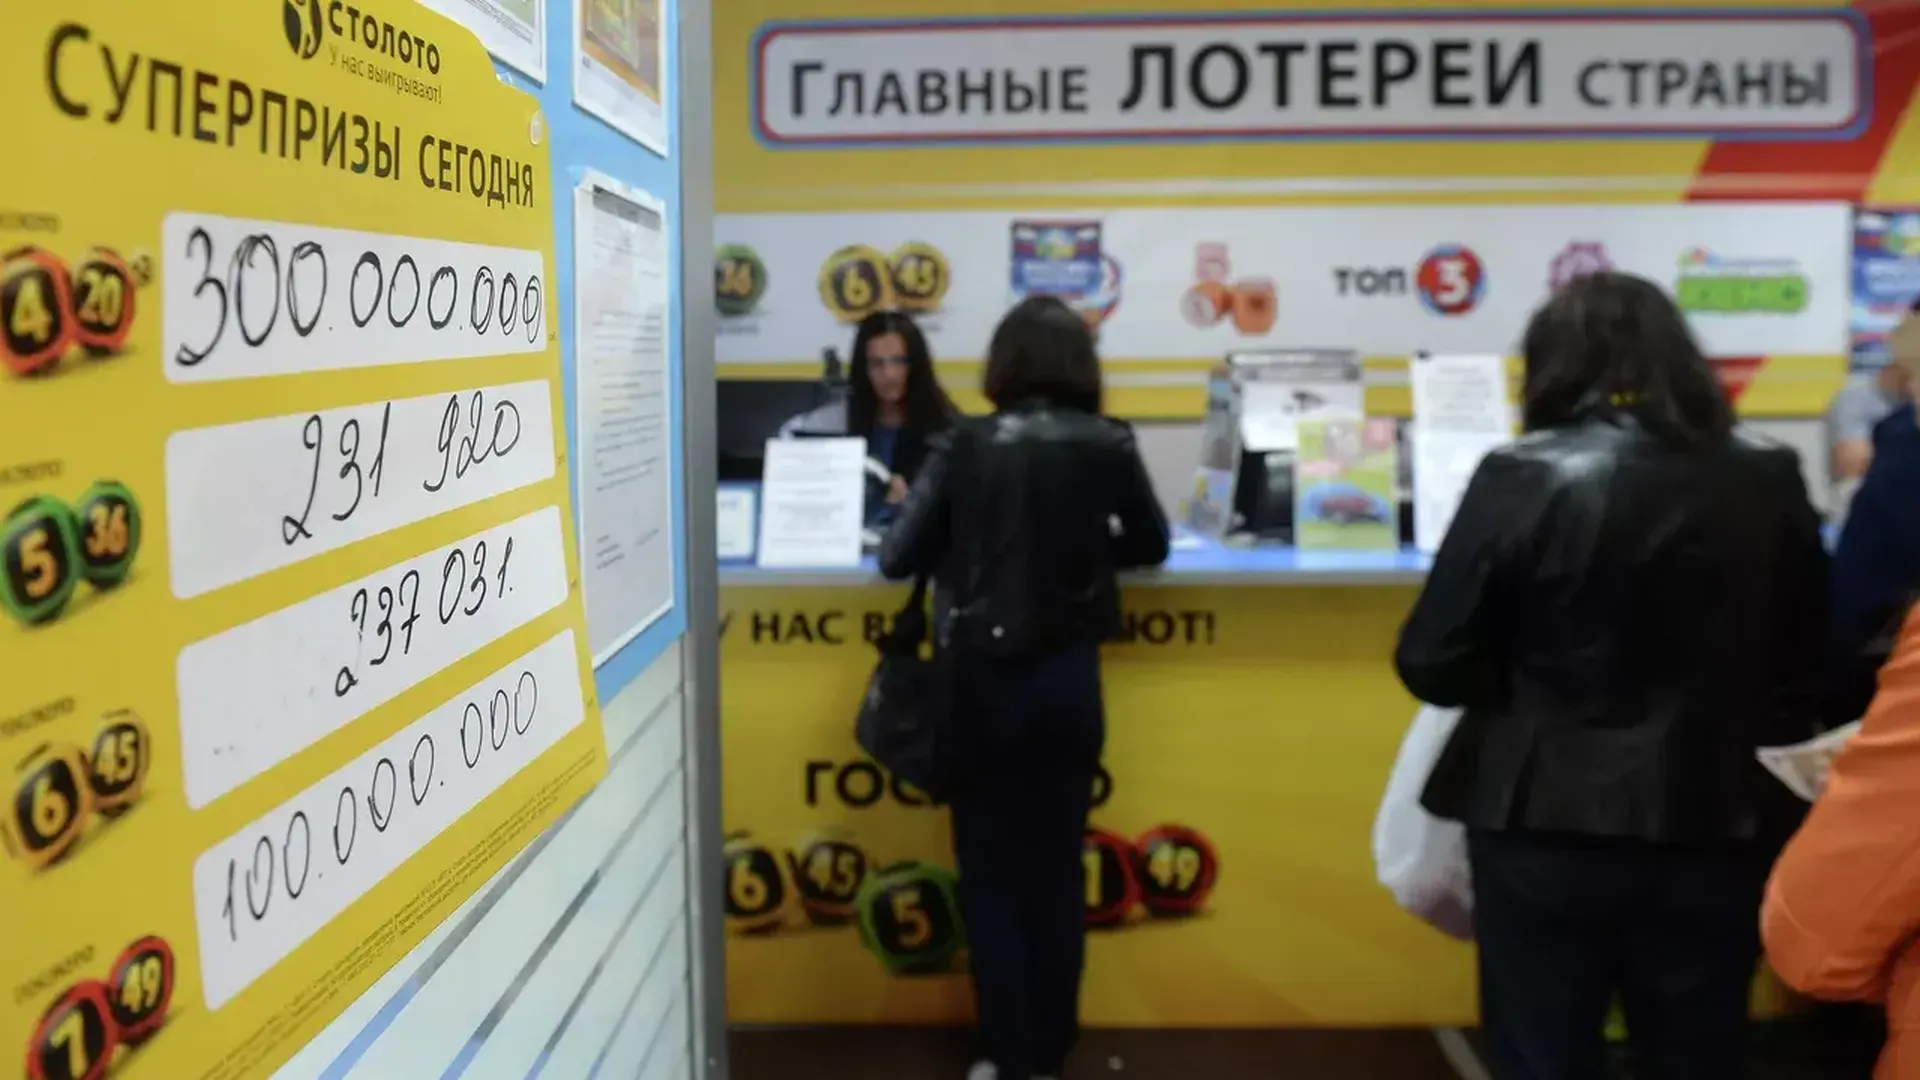 Слесарь из Нижнего Новгорода выиграл в лотерею миллиард рублей